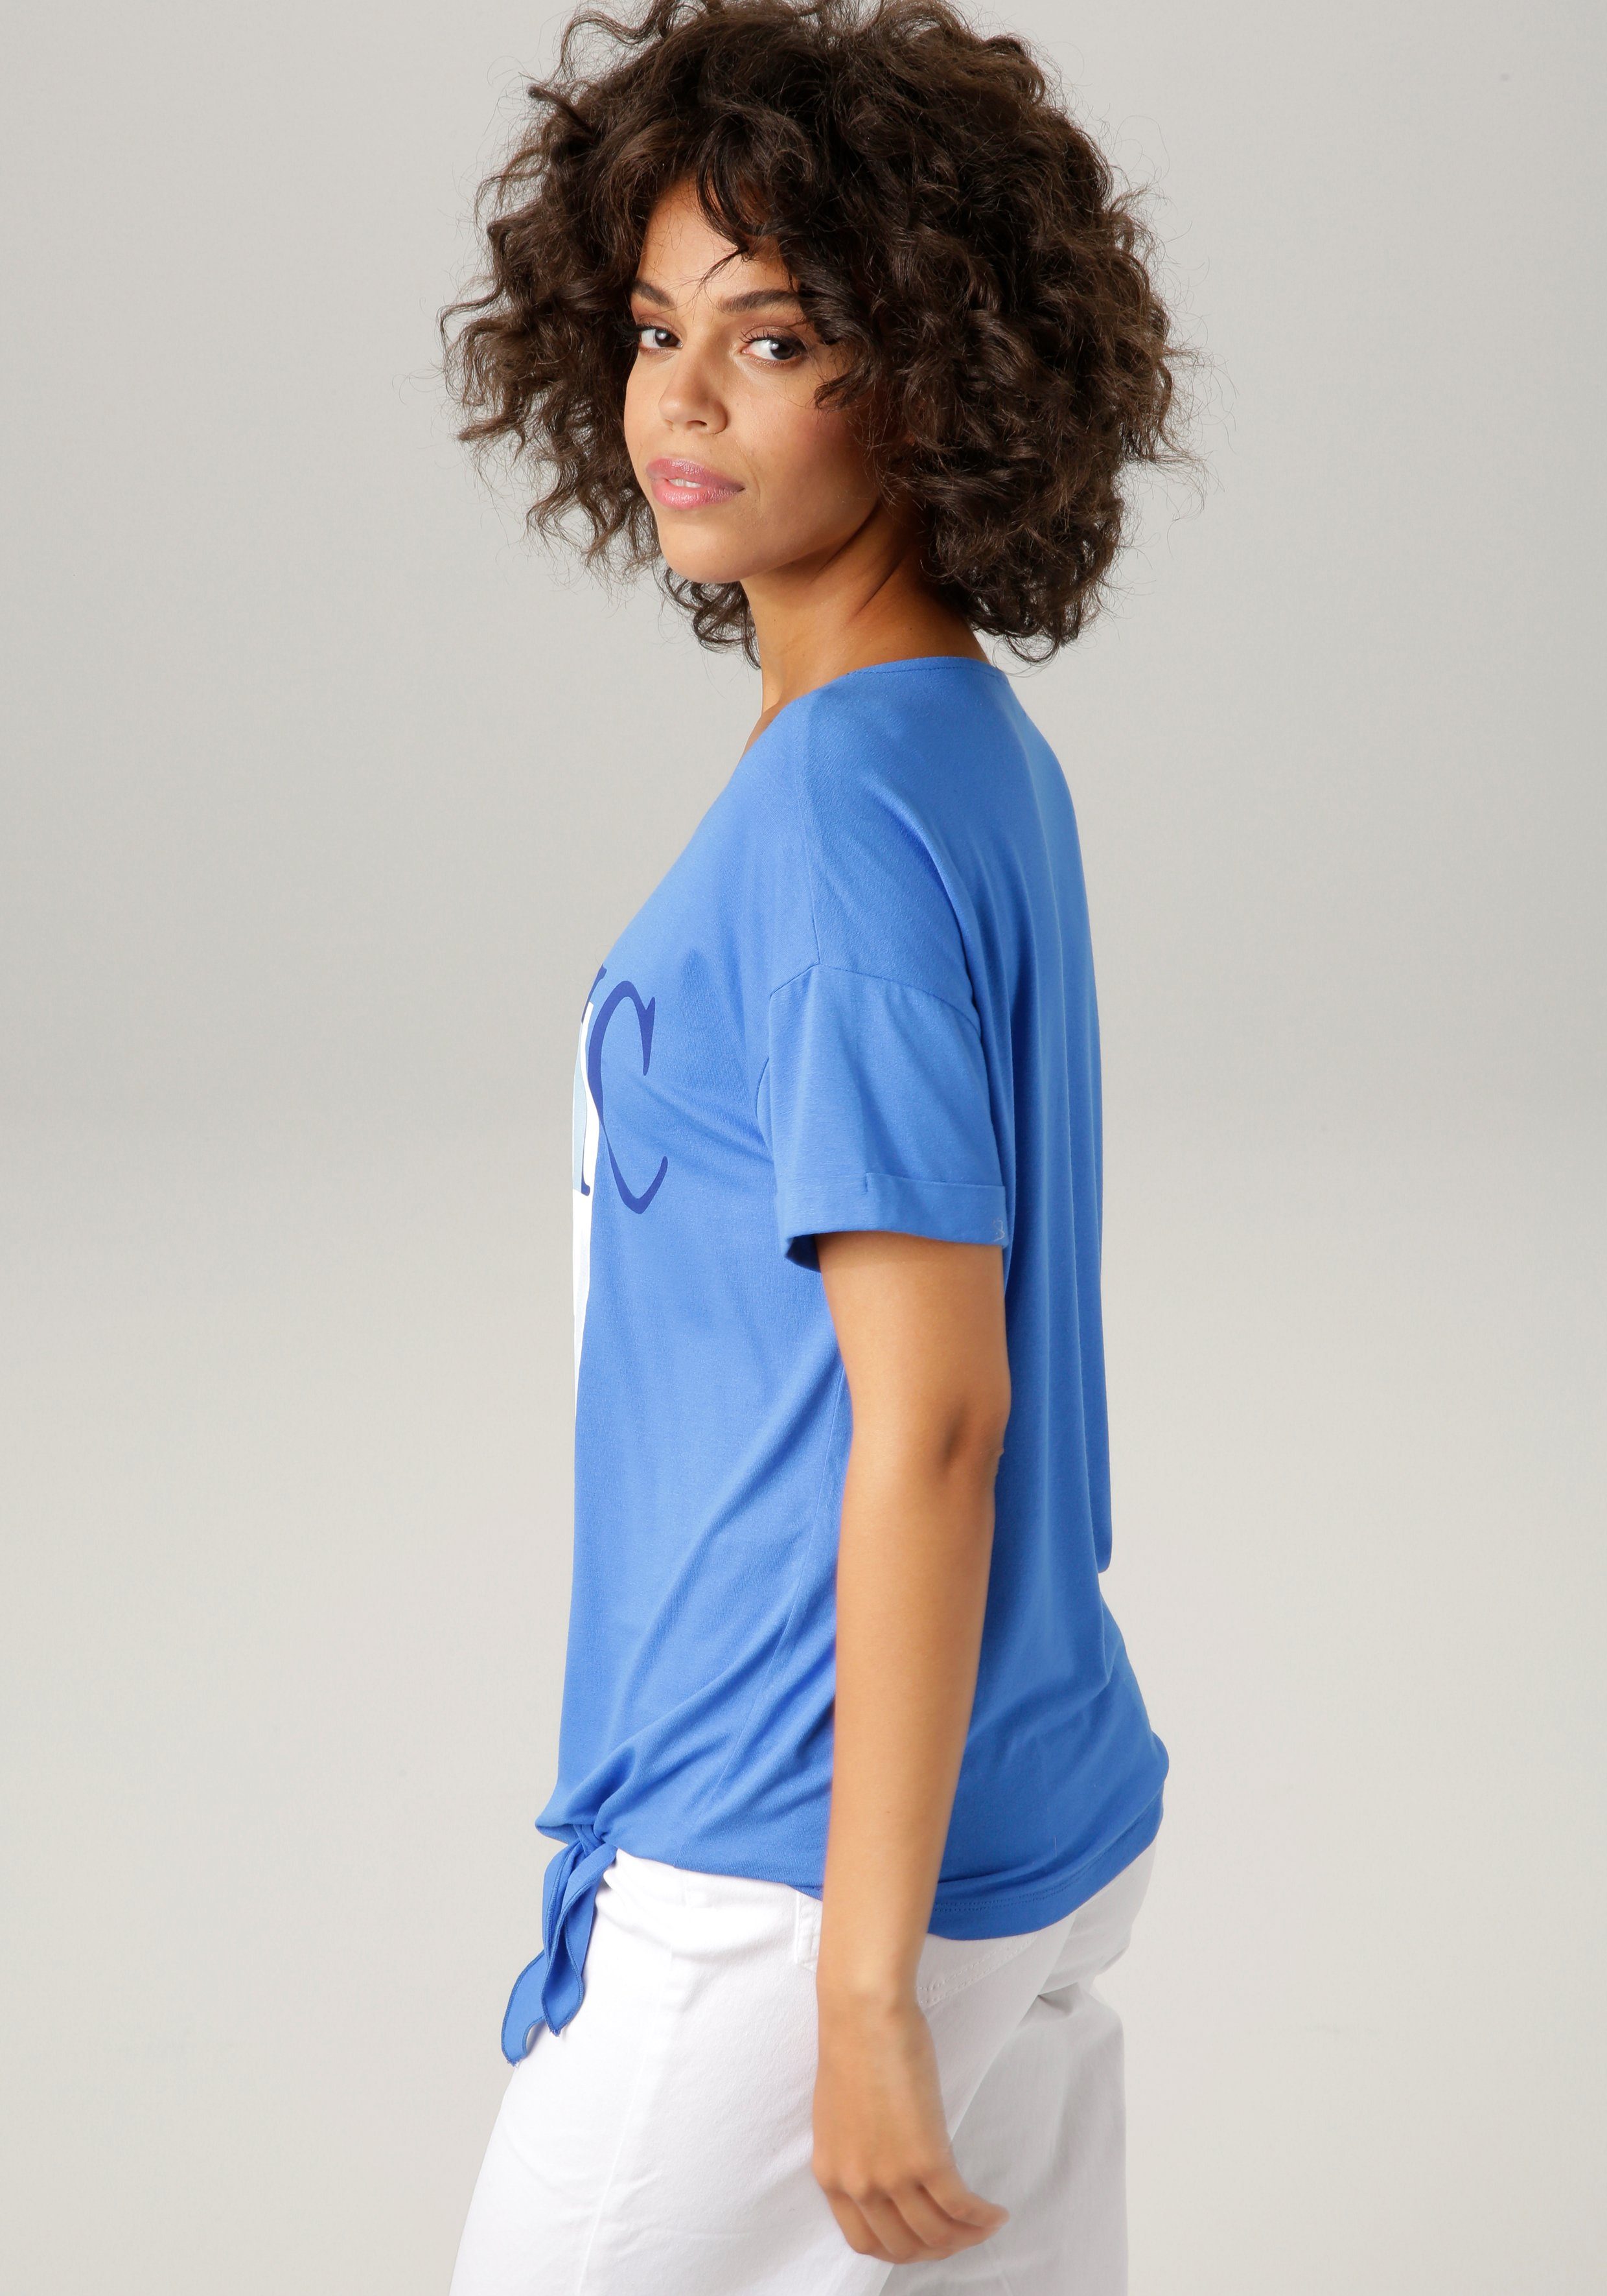 Aniston CASUAL ausdrucksstarkem royalblau-marine-wollweiß-hellpetrol-sand-schwarz "ethnischem" T-Shirt mit Frontdruck